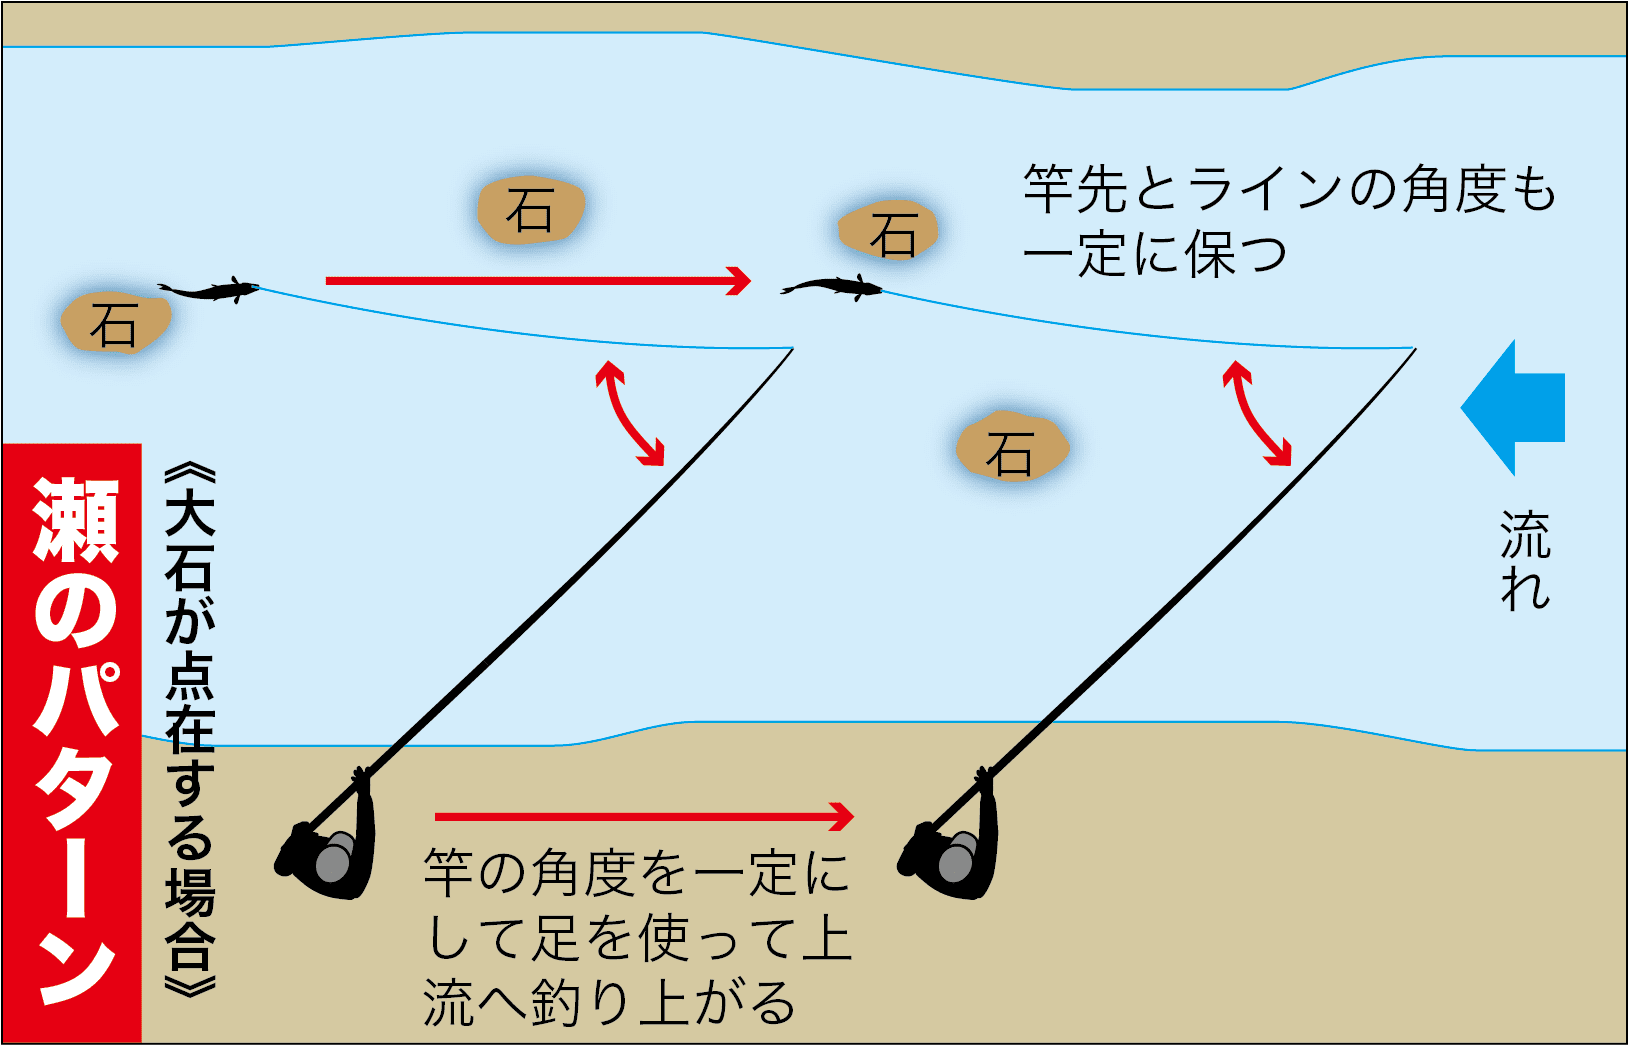 アユの引き釣り竿の角度9